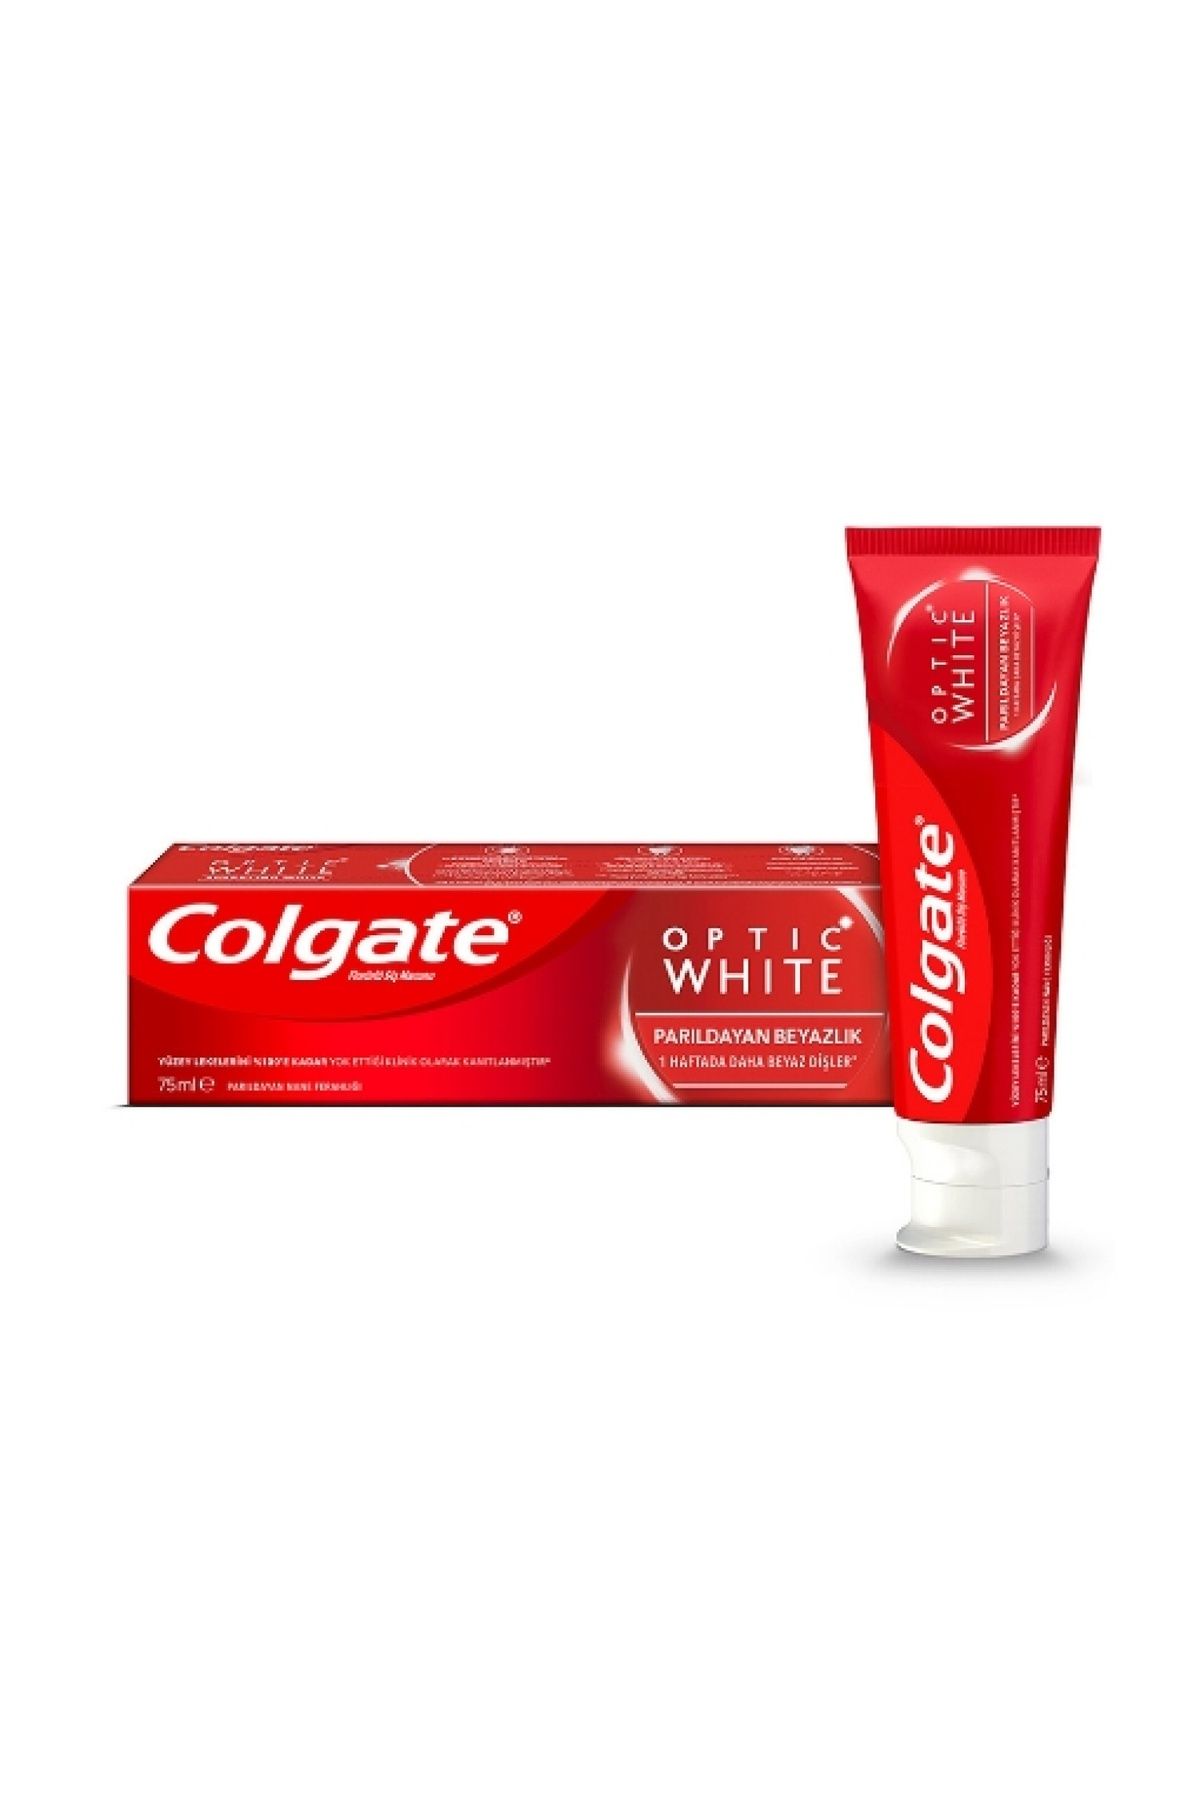 Colgate Diş Macunu Optic White Parıldayan Beyazlık 75 ml. (24'lü)